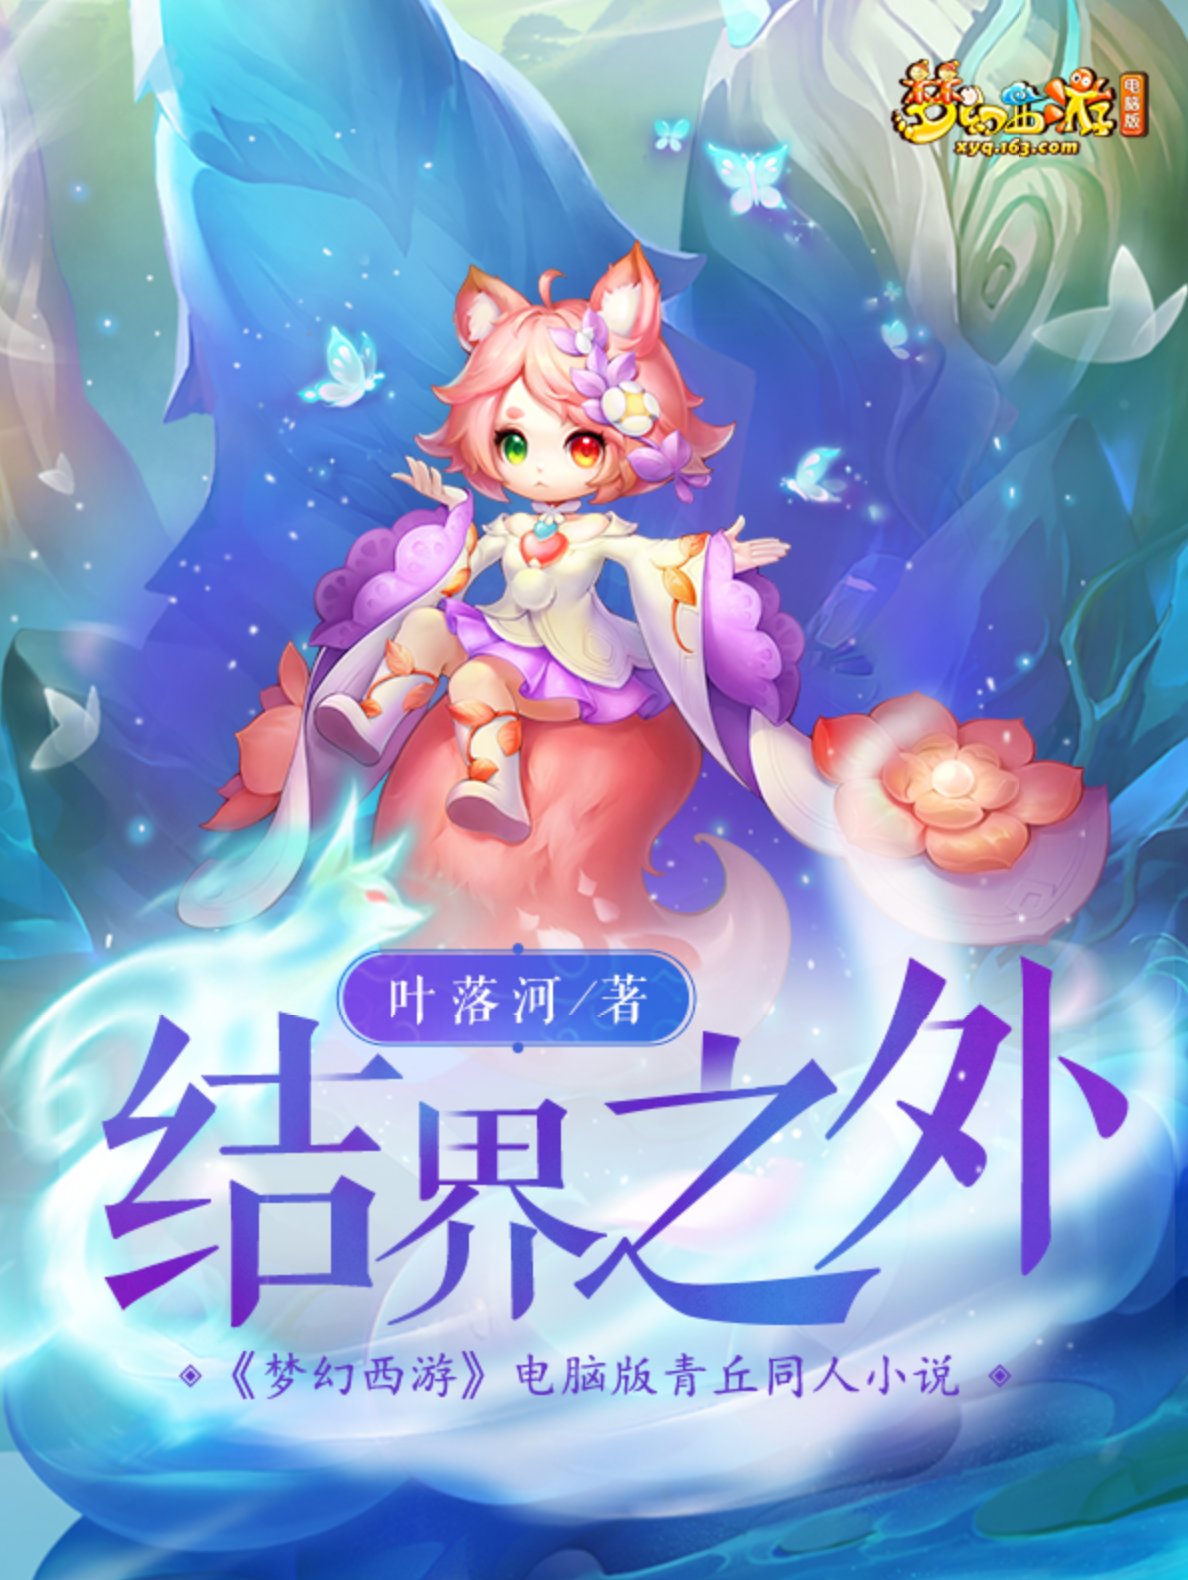 奇幻之旅，《梦幻西游》电脑版青丘主题小说即将上线